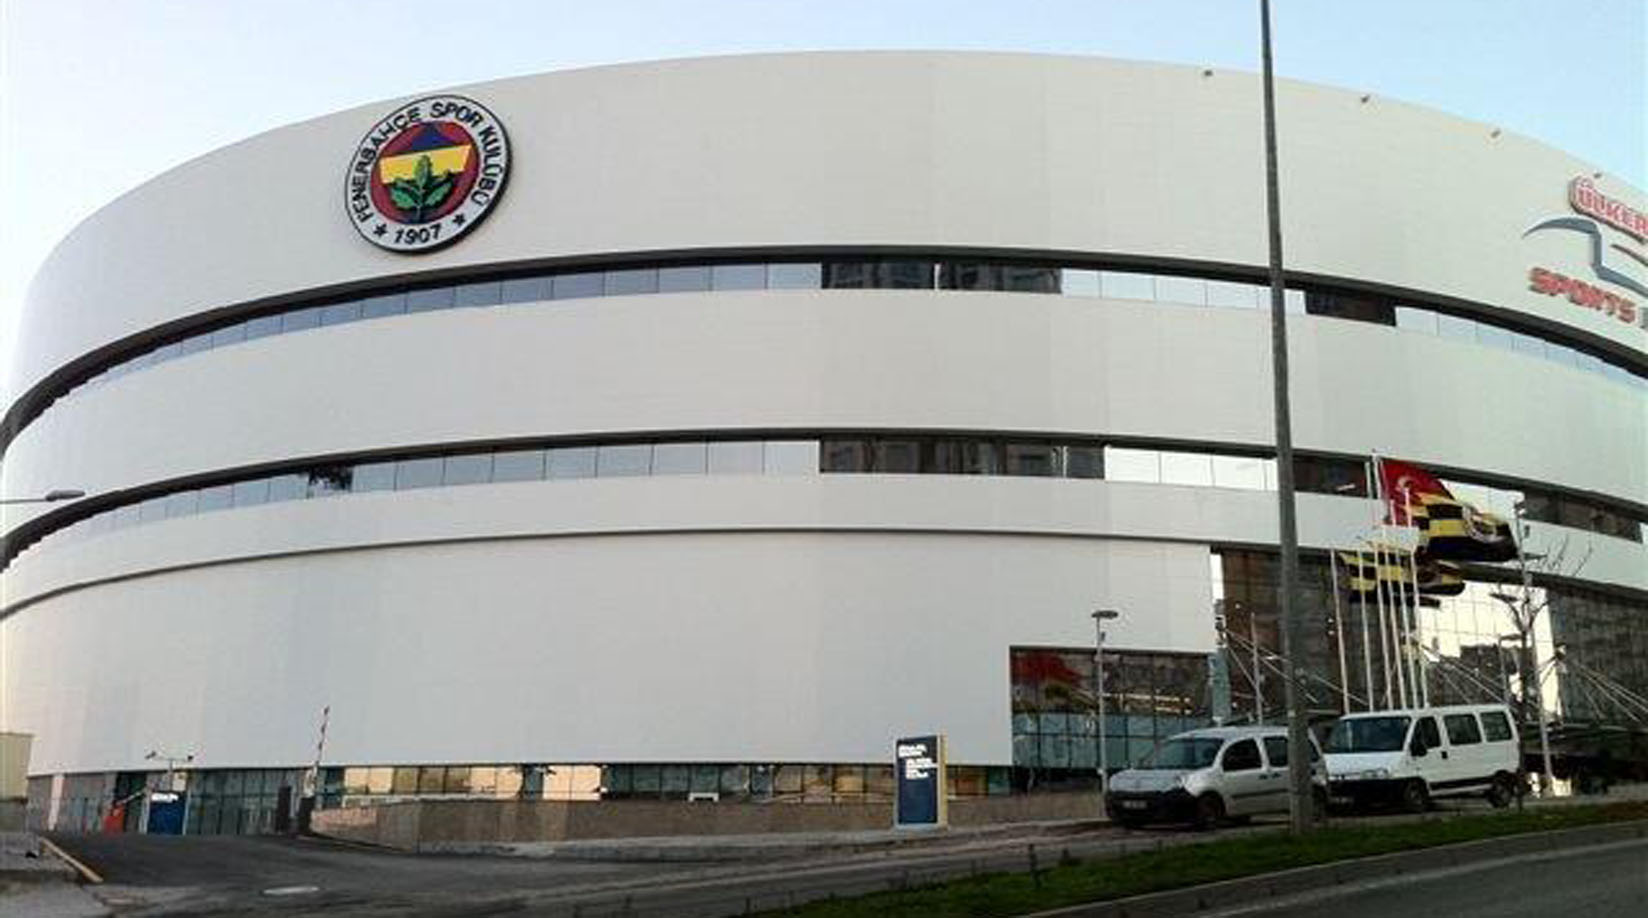 Özka İnşaat Ülker Arena and Alpella Youth City Project